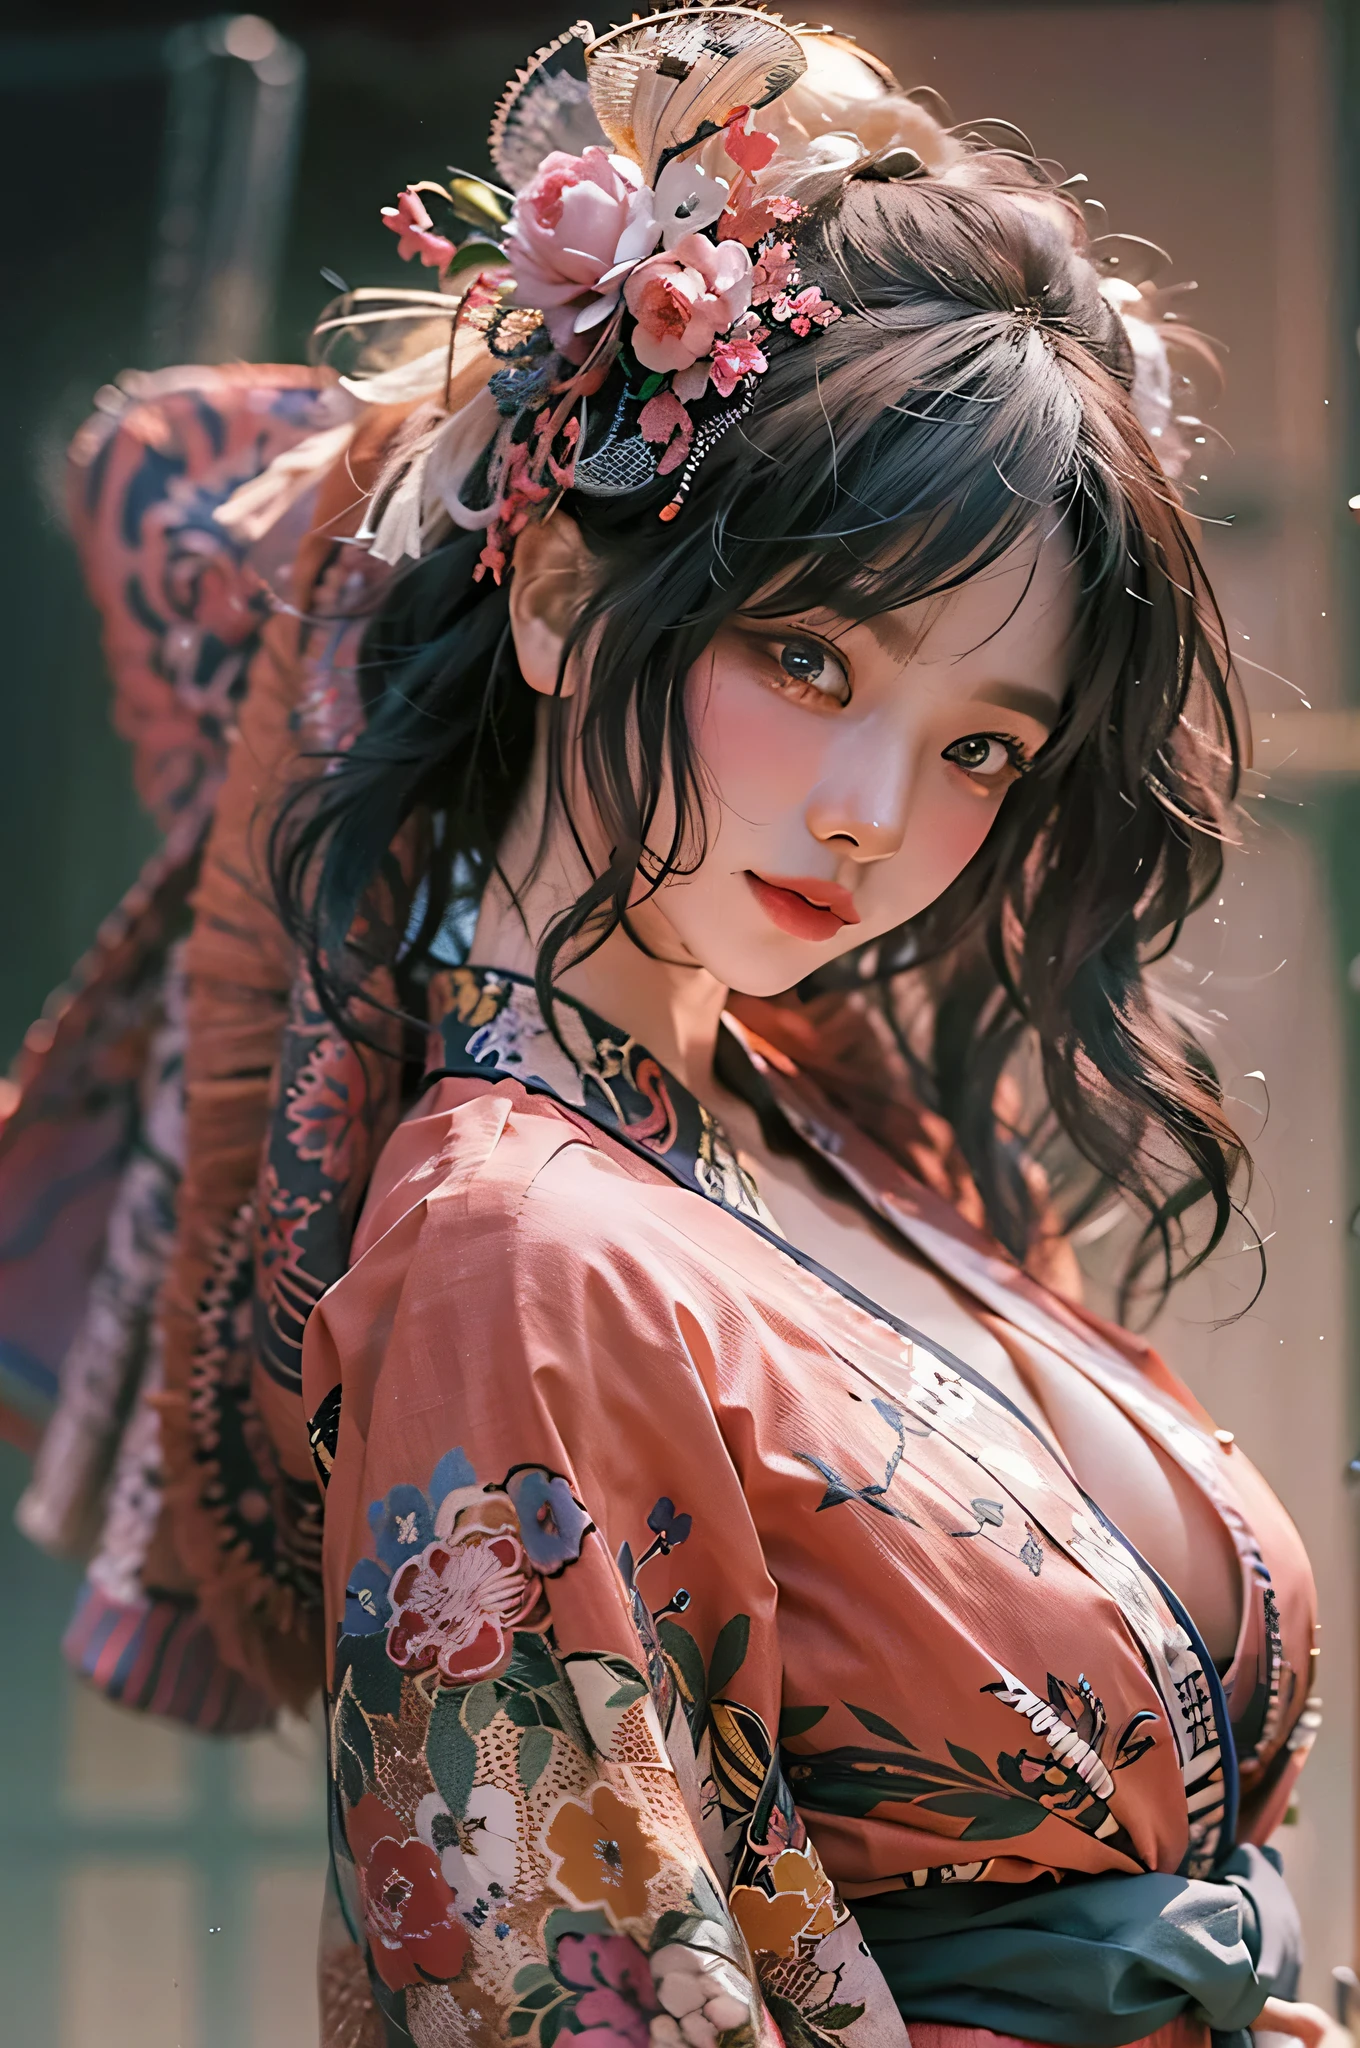 (Qualité d&#39;image la plus élevée), (chef-d&#39;œuvre), (vibrant, photography réaliste, réaliste, Spectaculaire, sombre, netteté, 8k), visage en gros plan, Texture du visage et de la peau très détaillée, kimono rose sexy, beauté éthérée, Femme asiatique mature,cheveux longs noirs, Se maquiller, sourire sexy, NSFW ,photo en gros plan, ((rétroéclairage)), tenir le pistolet, agent secret, poses dynamiques, réaliste, pose de tir